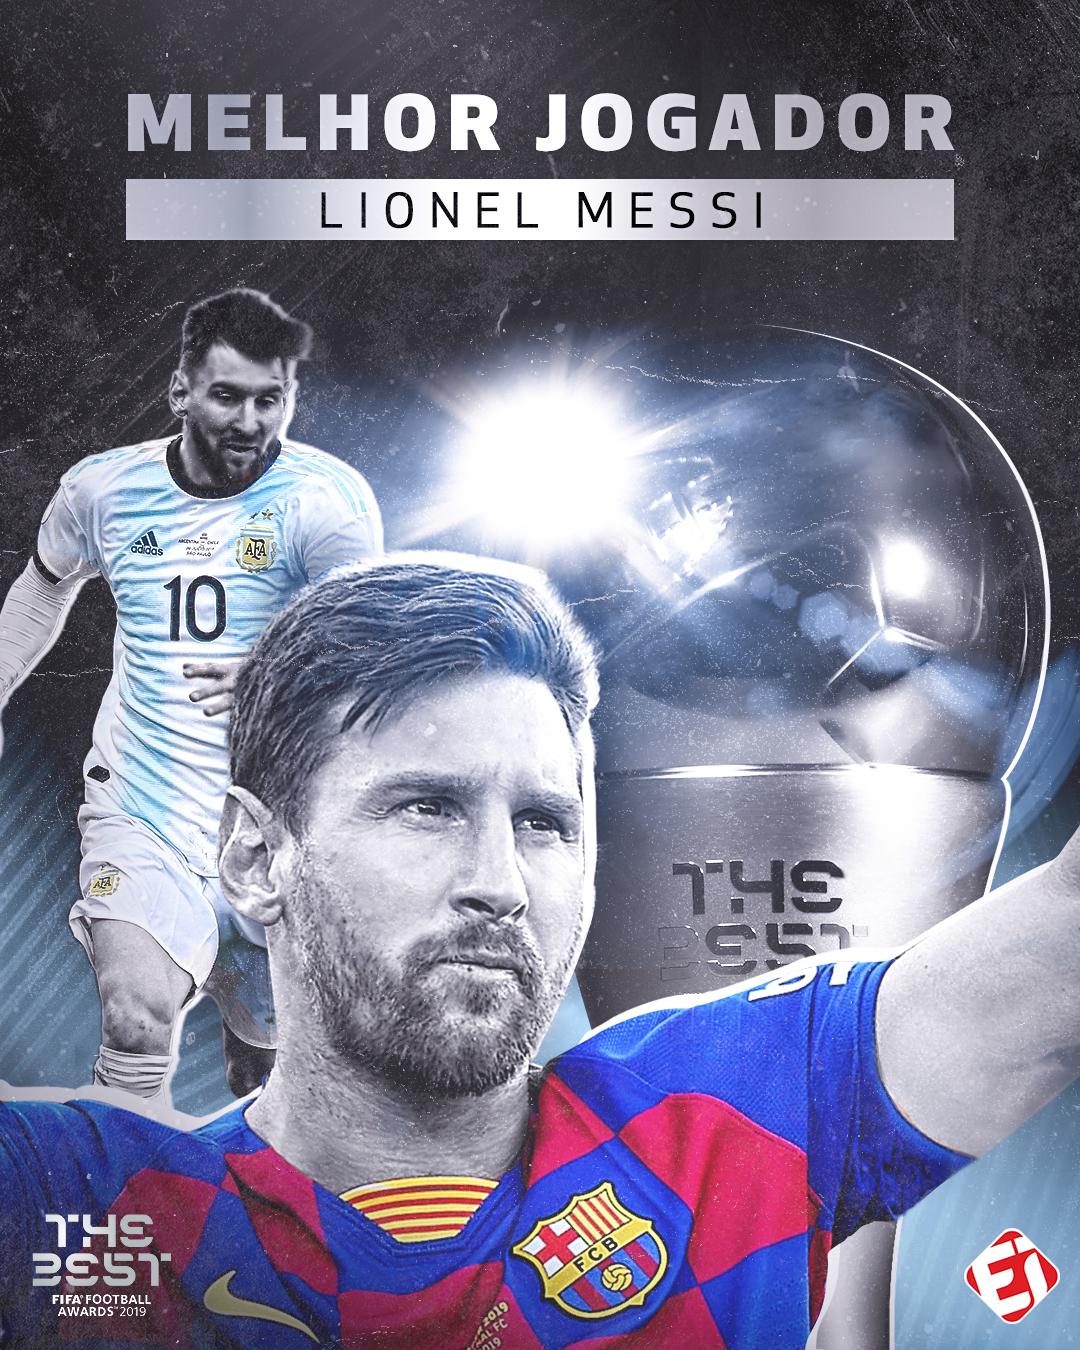 Messi é eleito o melhor jogador de futebol do mundo pela Fifa - Princesa do  Tapajós